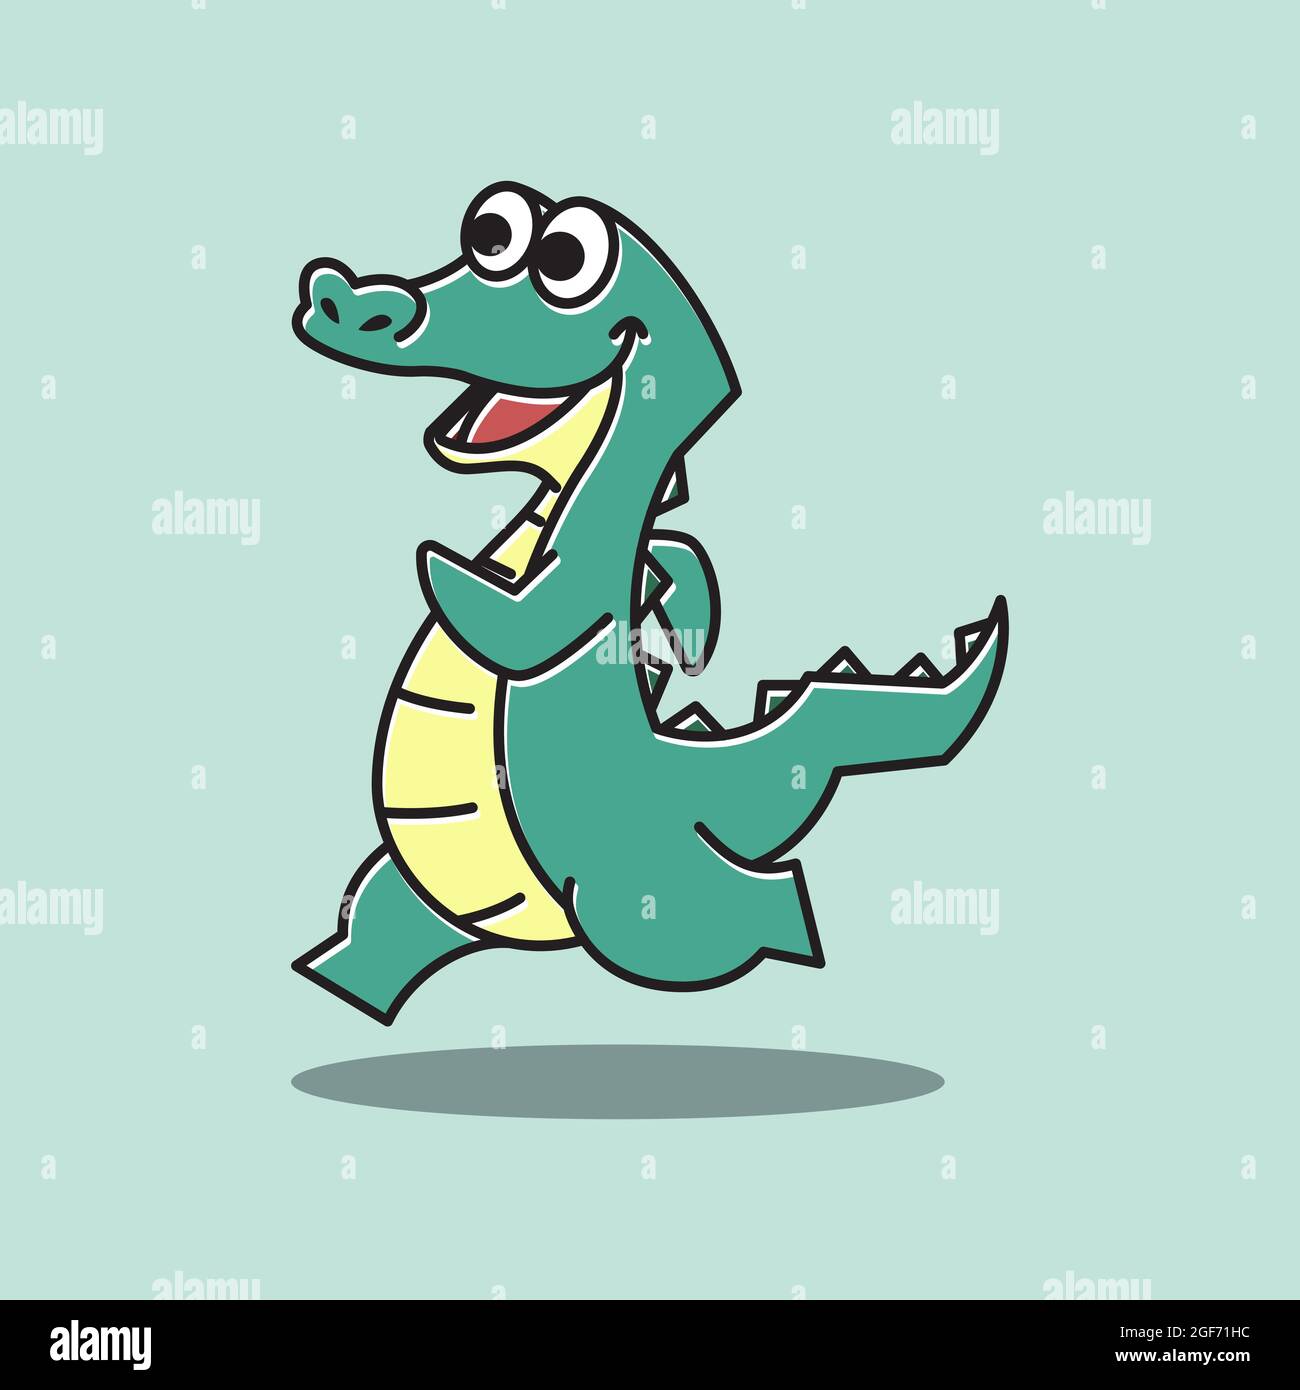 Coccodrillo Alligator Running Sport Funny carino personaggio Mascot Cartoon Illustrazione Vettoriale